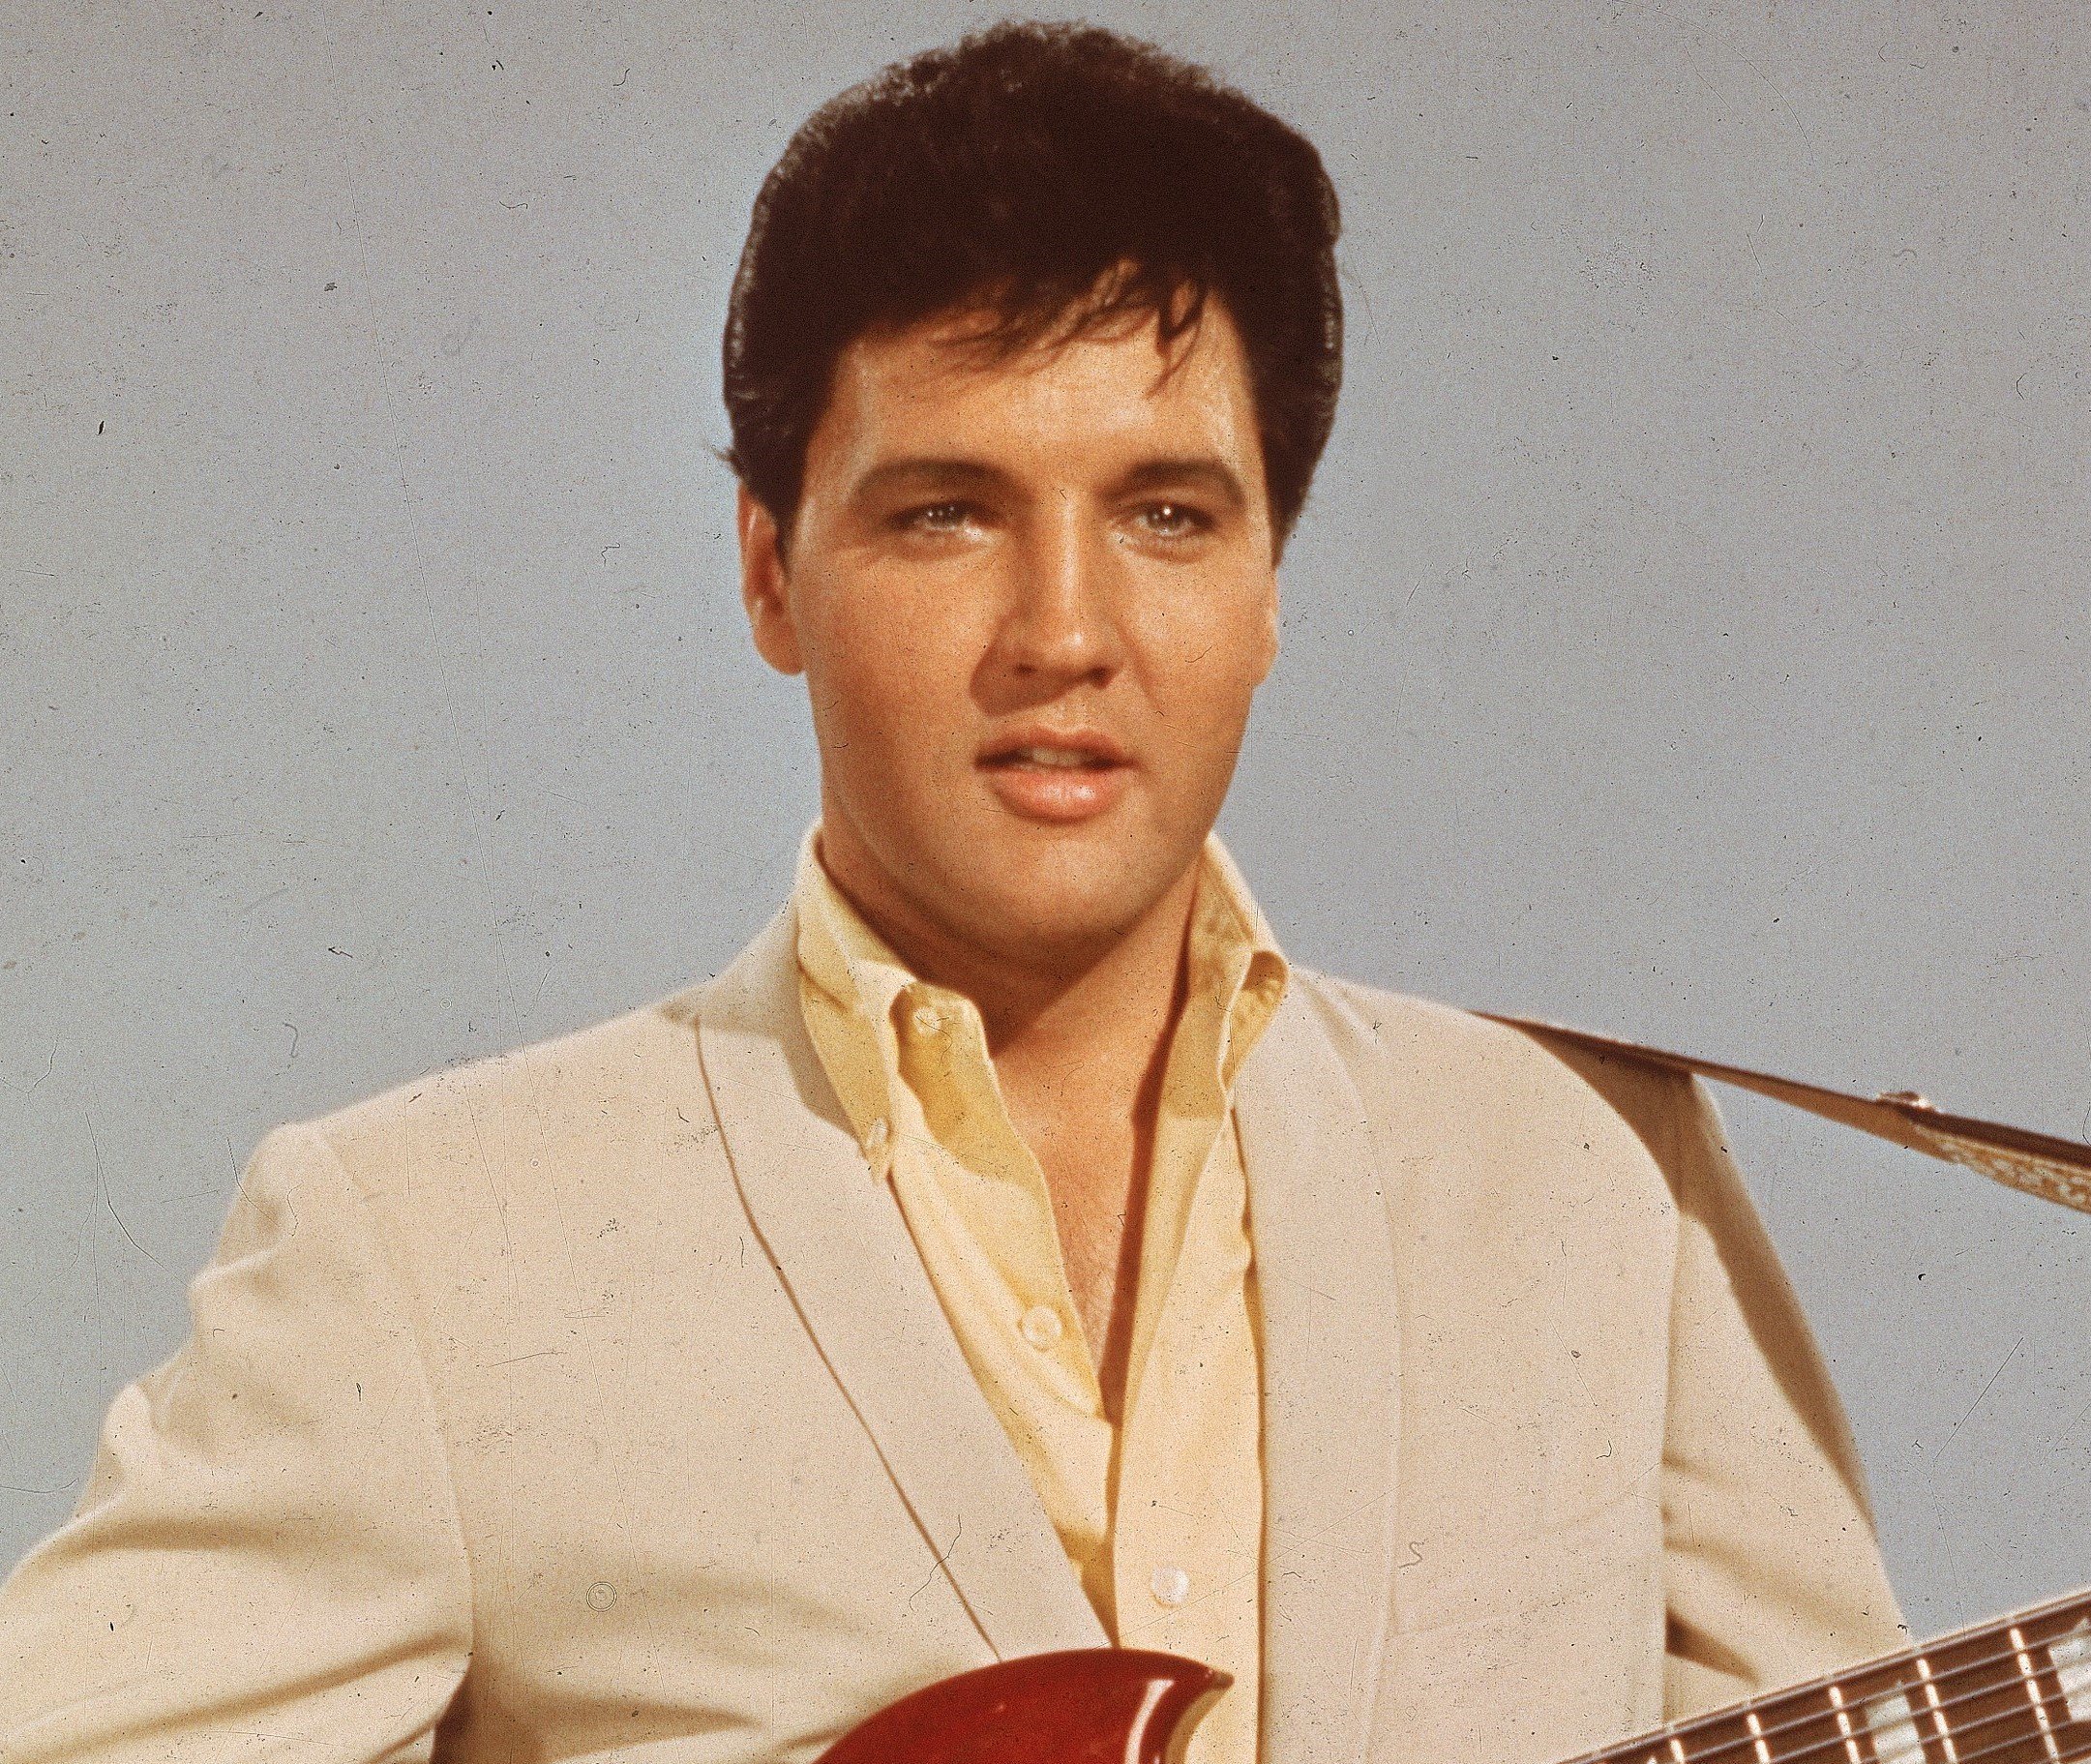 Elvis Presley wearing white